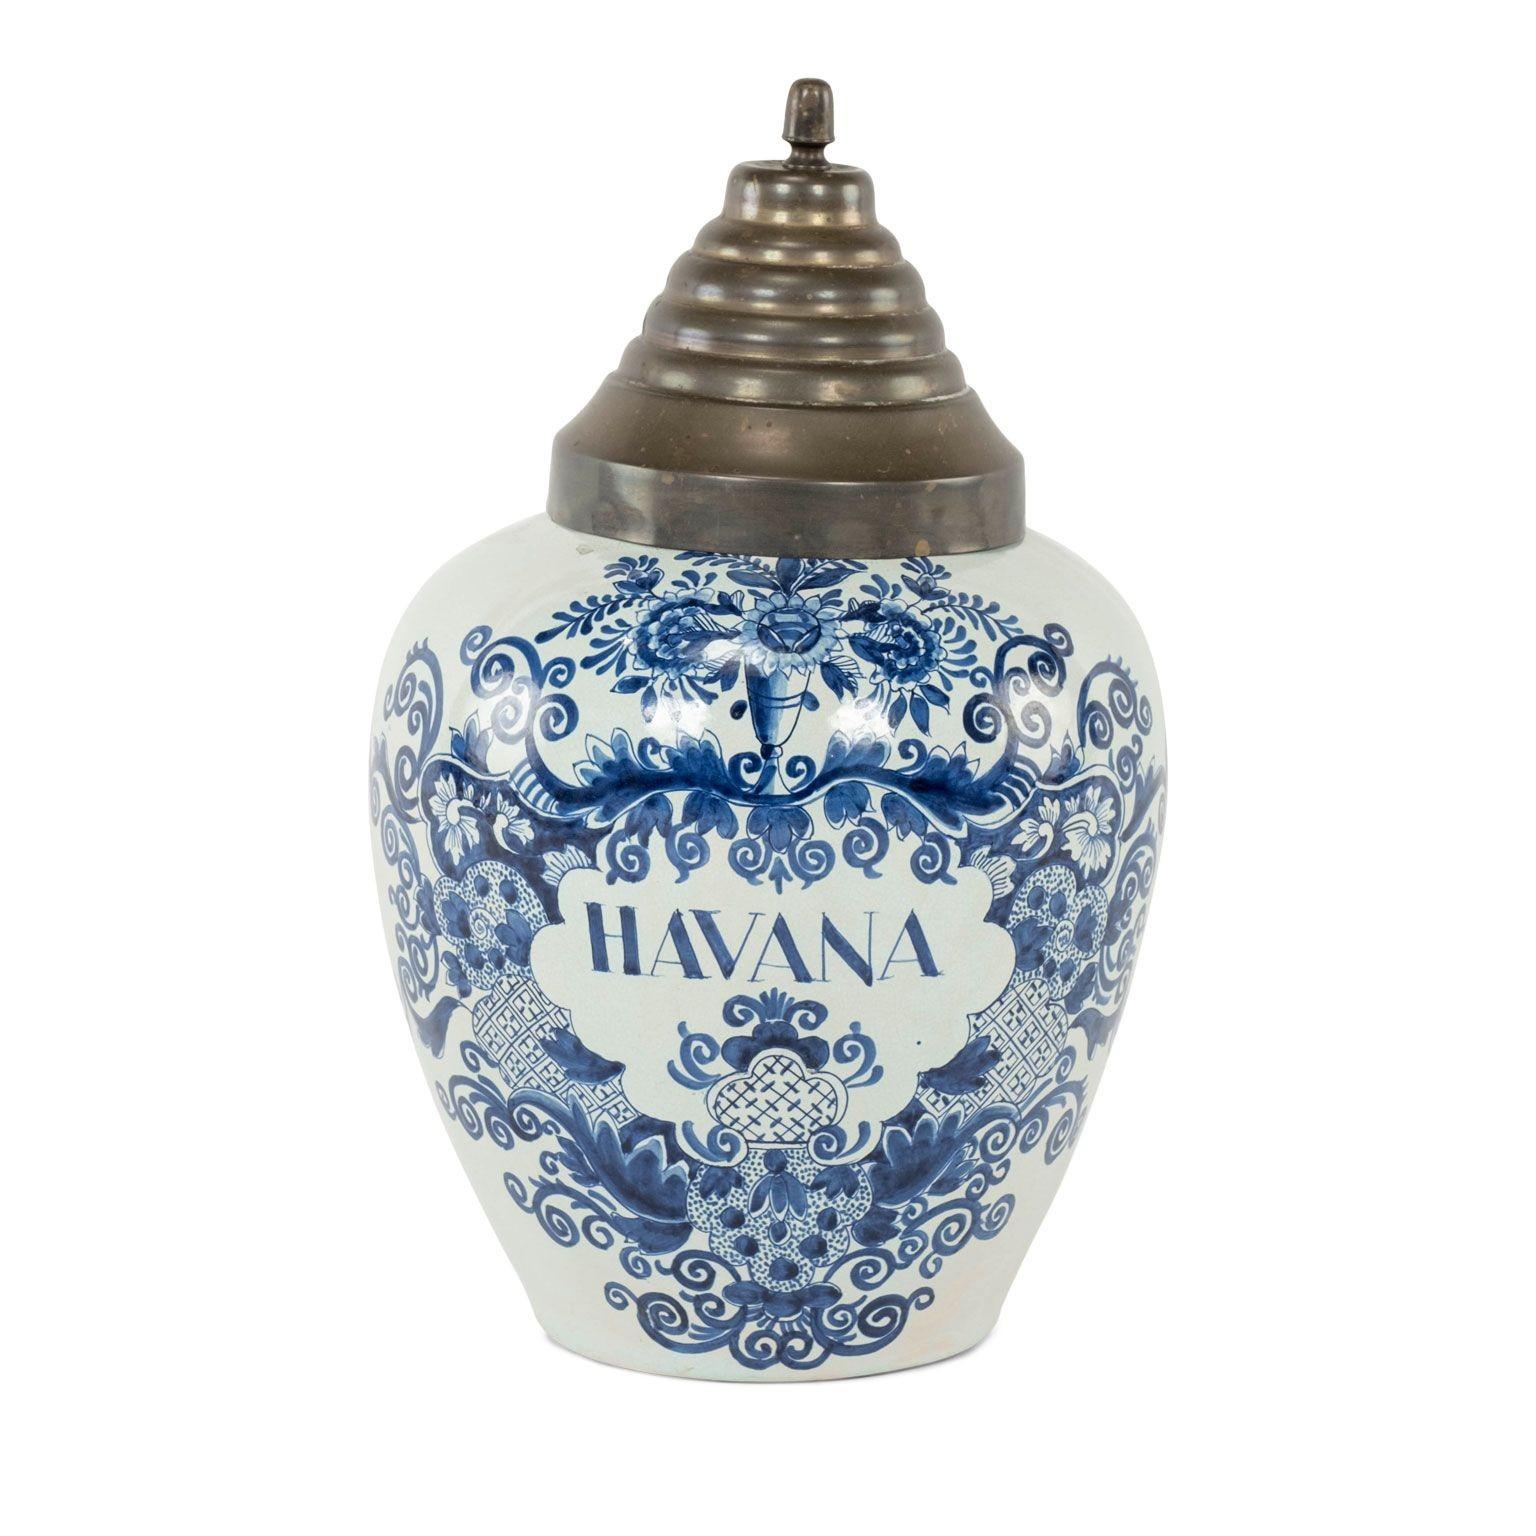 Delft Blau und Weiß "Havanna" Tabak JAR